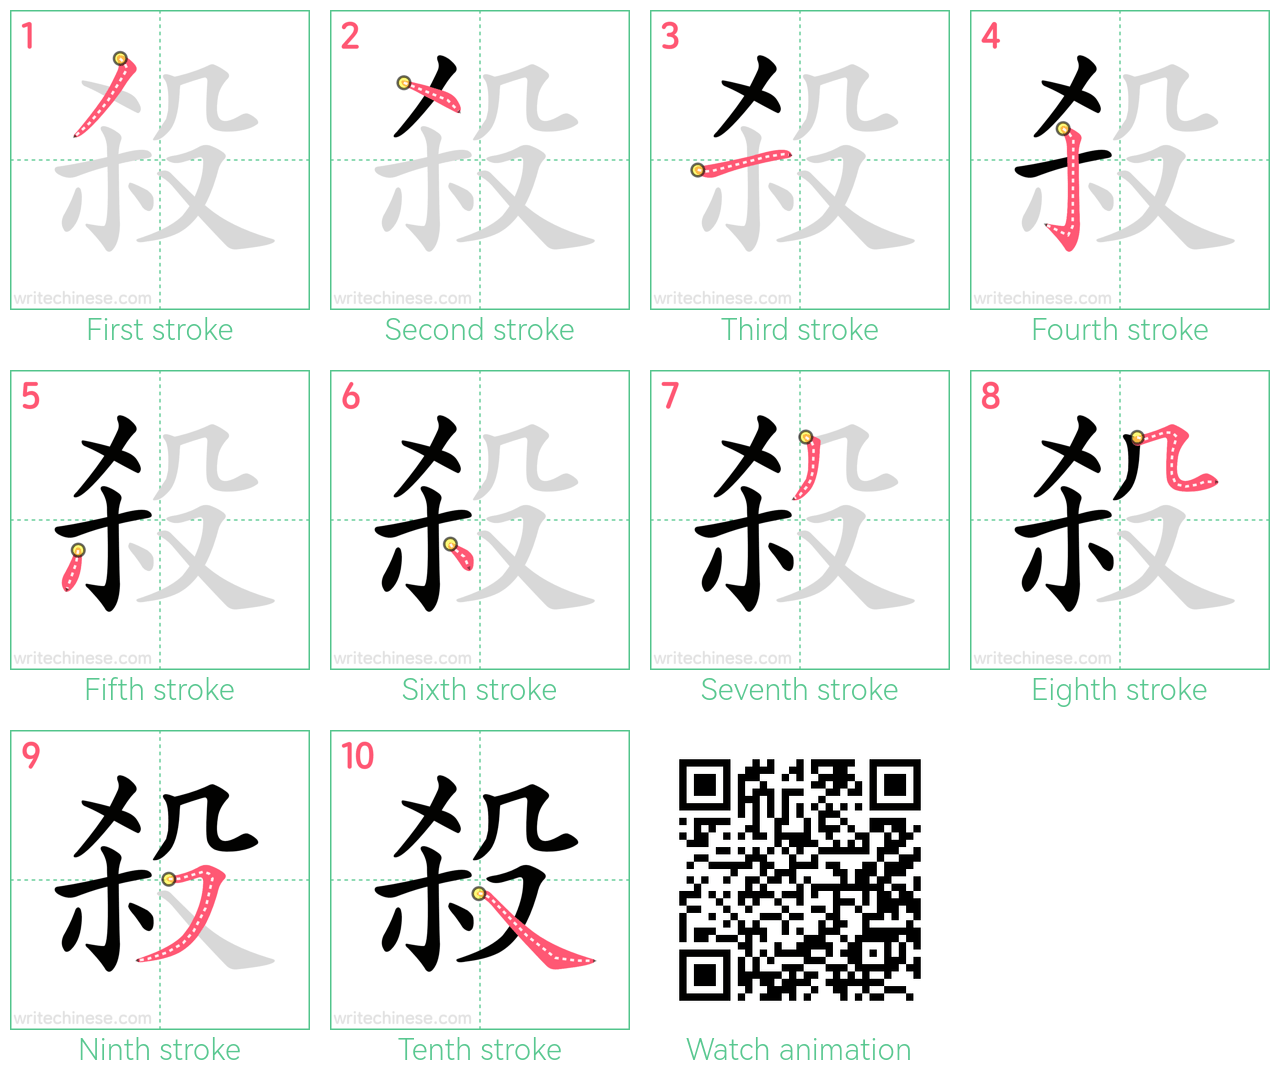 殺 step-by-step stroke order diagrams